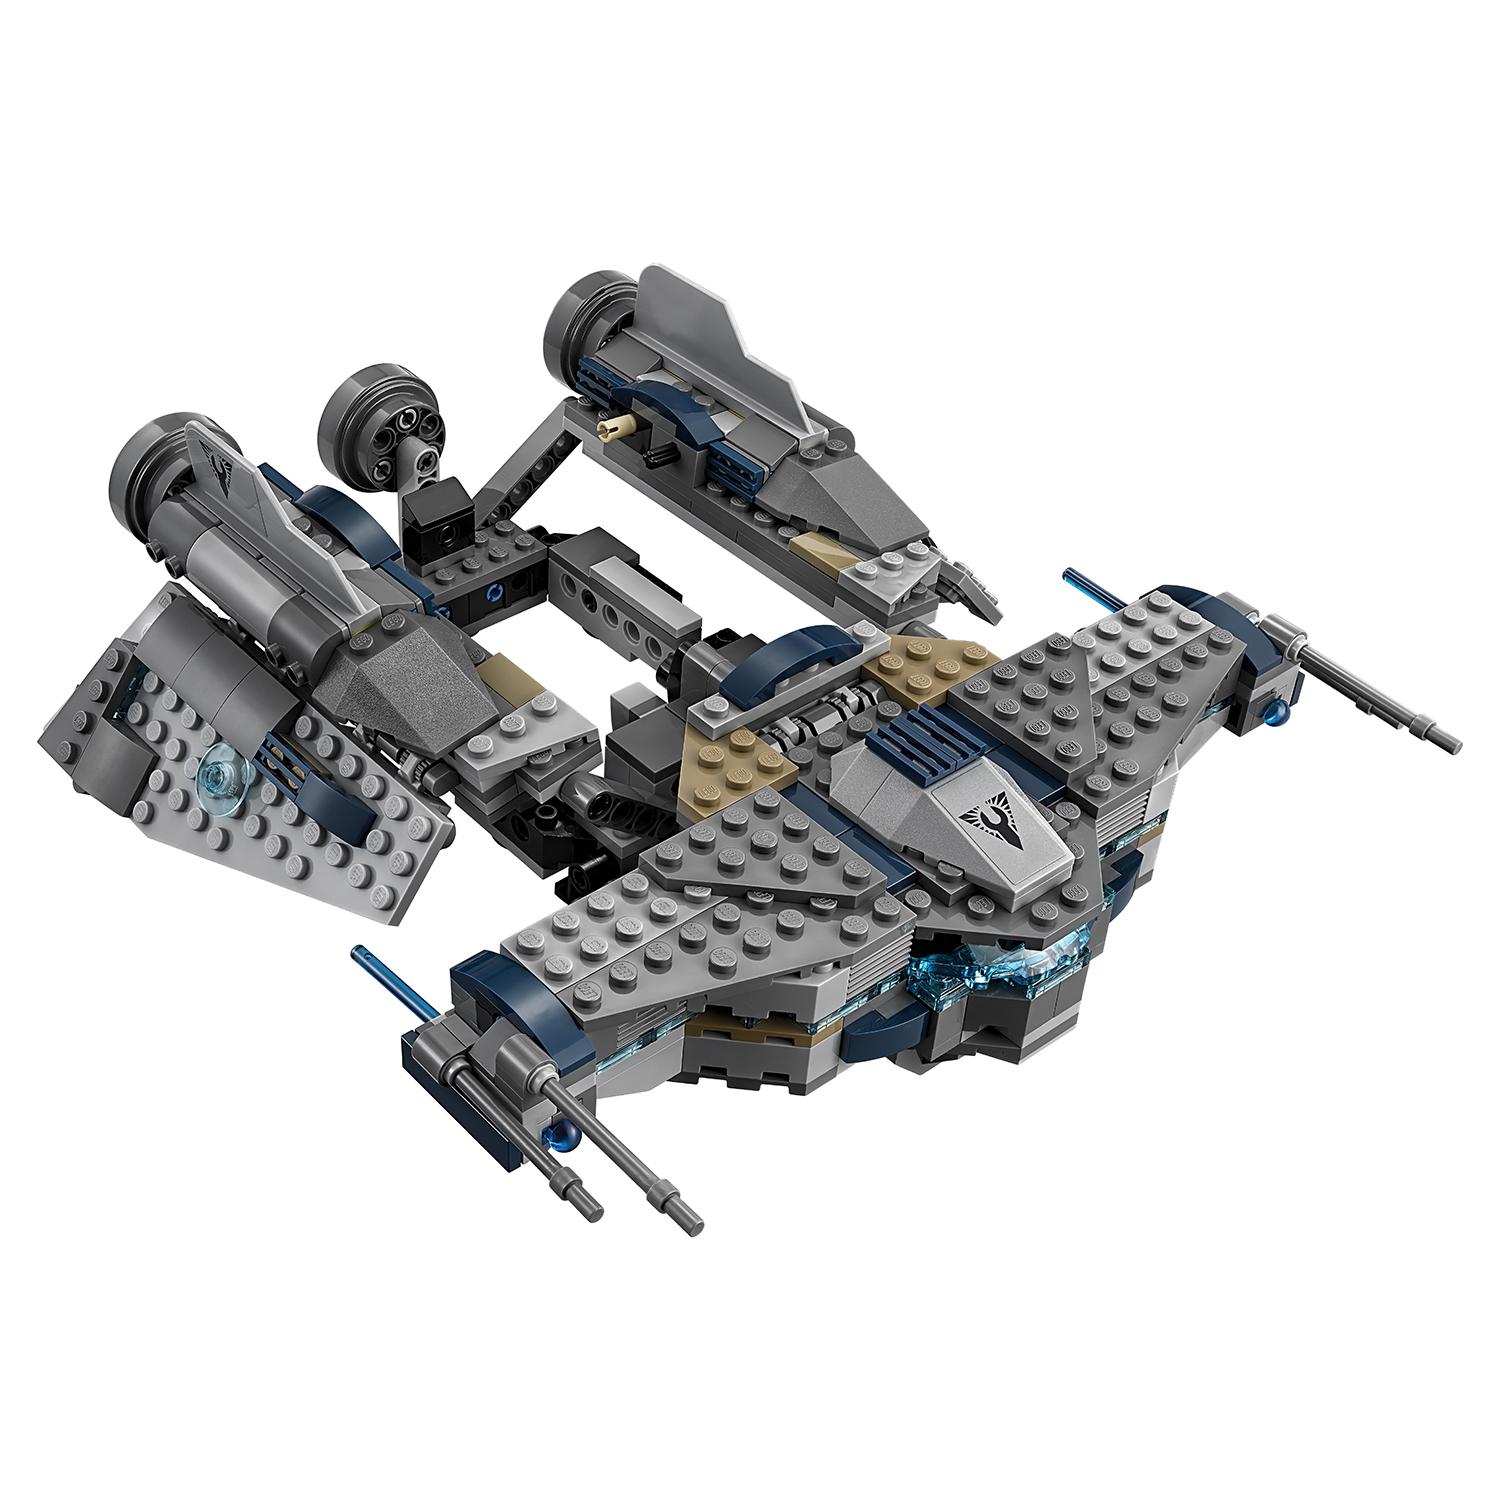 Lego Star Wars 75147 Звёздный Мусорщик